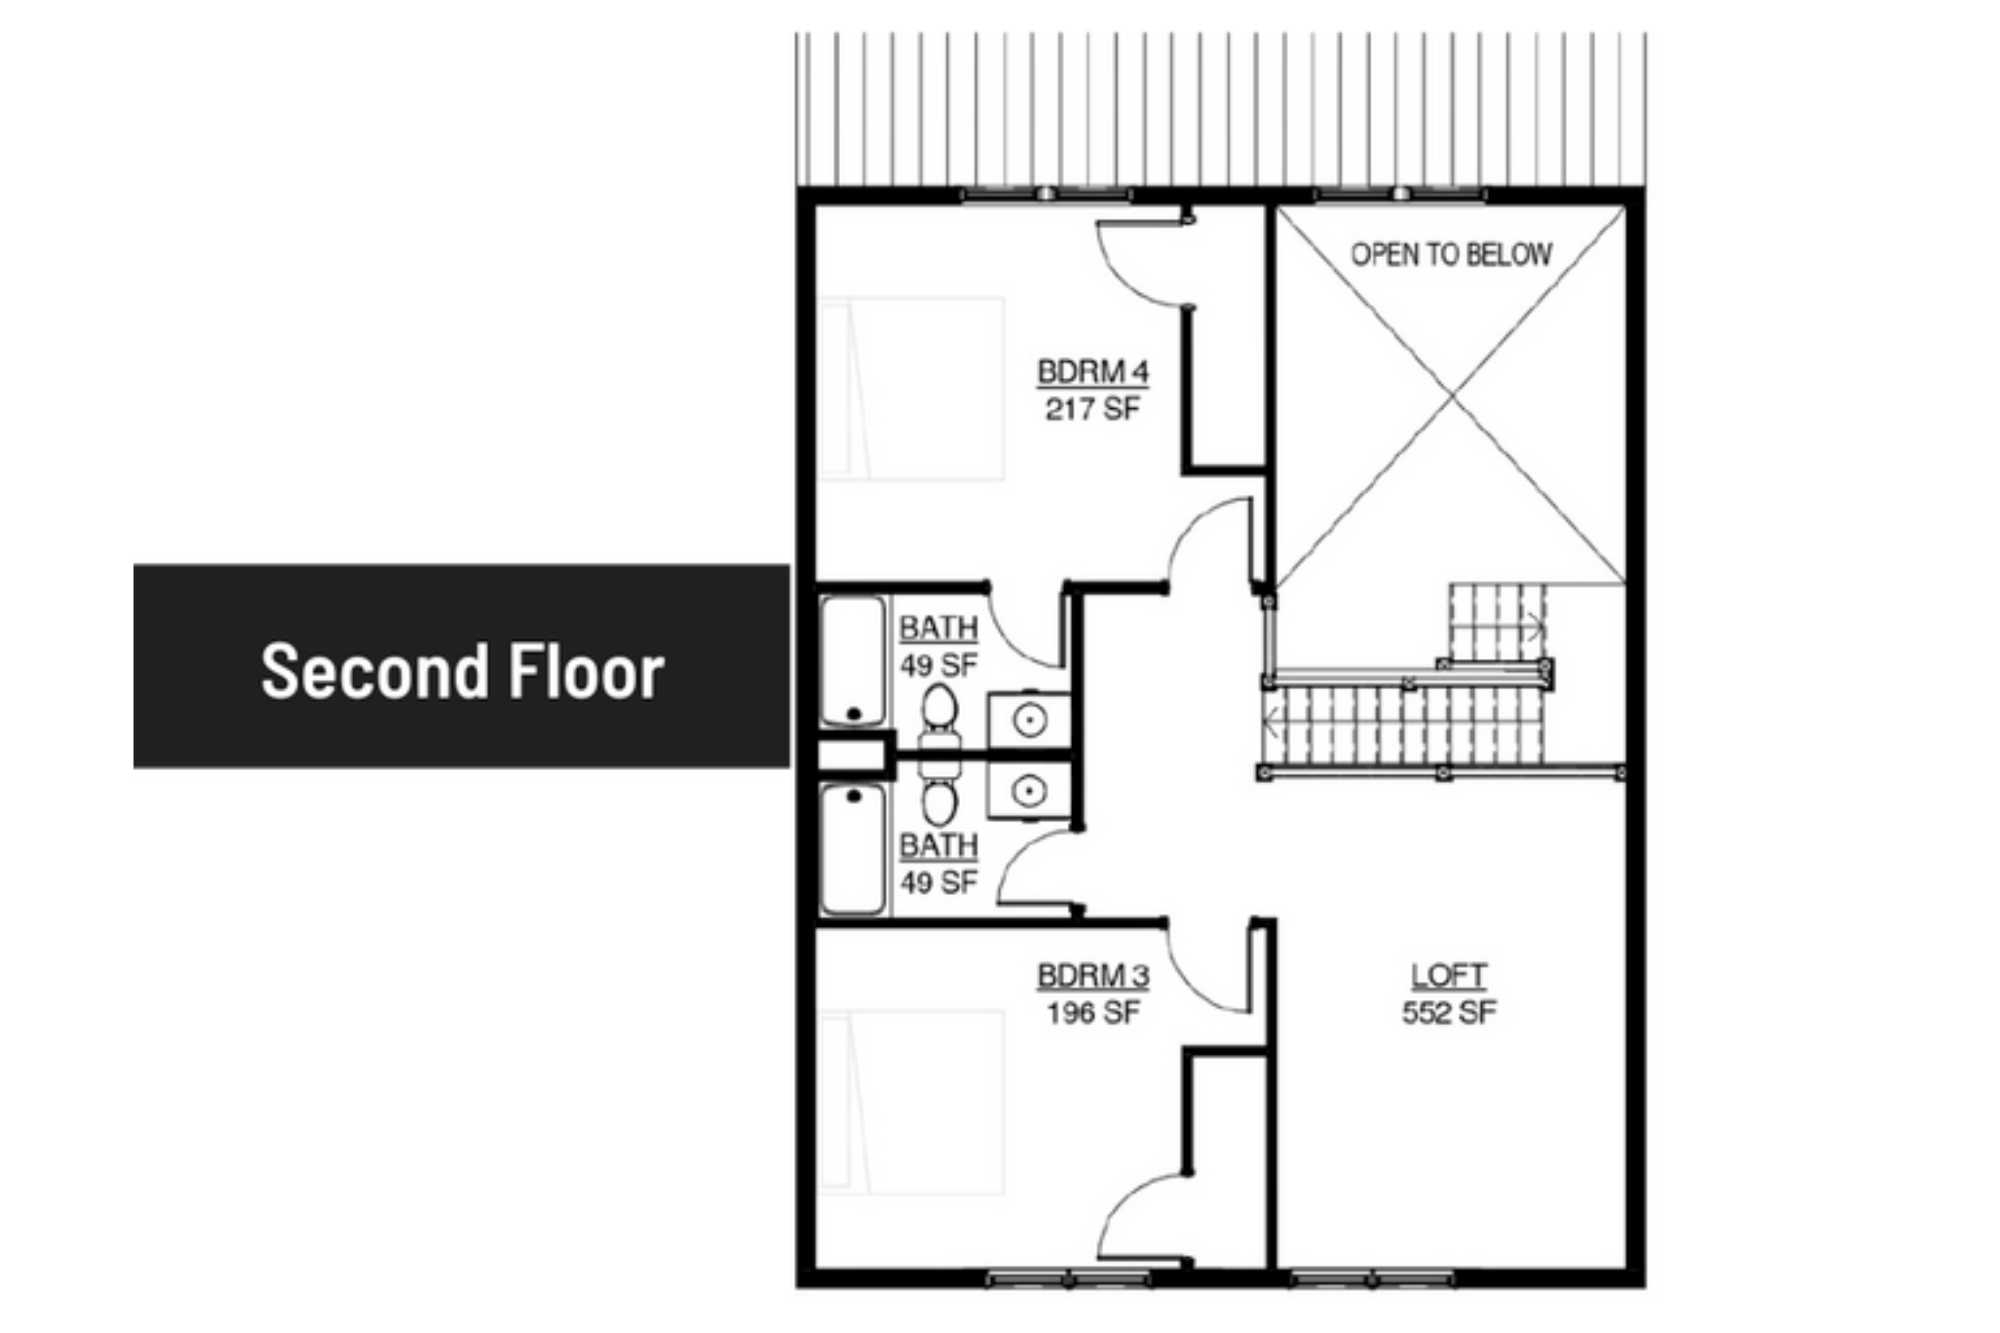 4bedroom Second Floor Floor Plan Smoky Mountain Cabins Reedmont Lodges